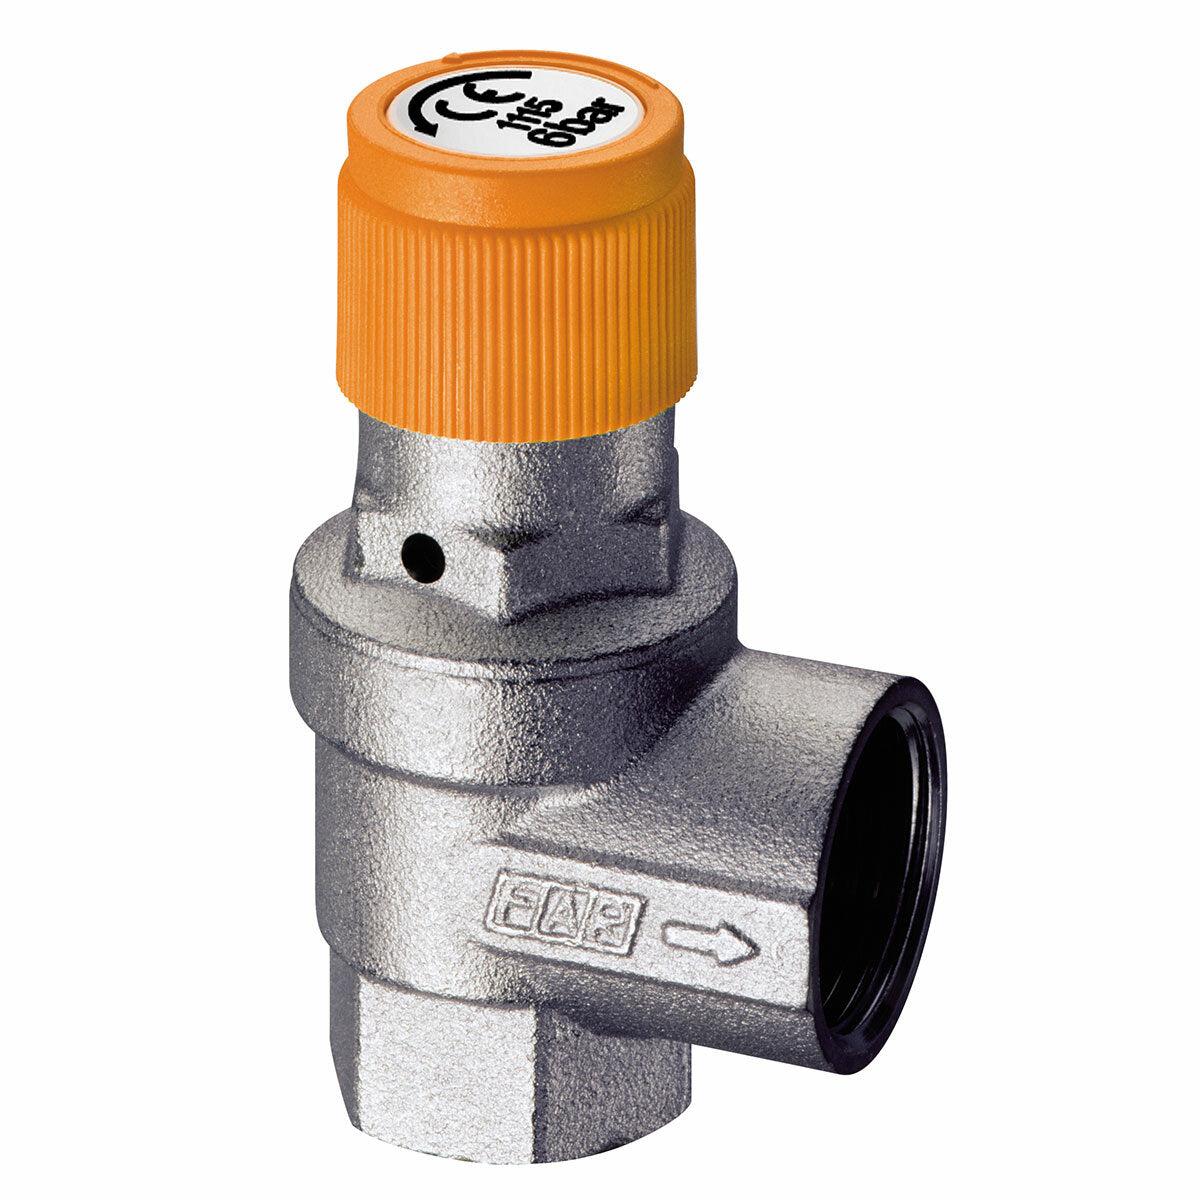 FAR safety valve for solar systems 1/2” 8 bar